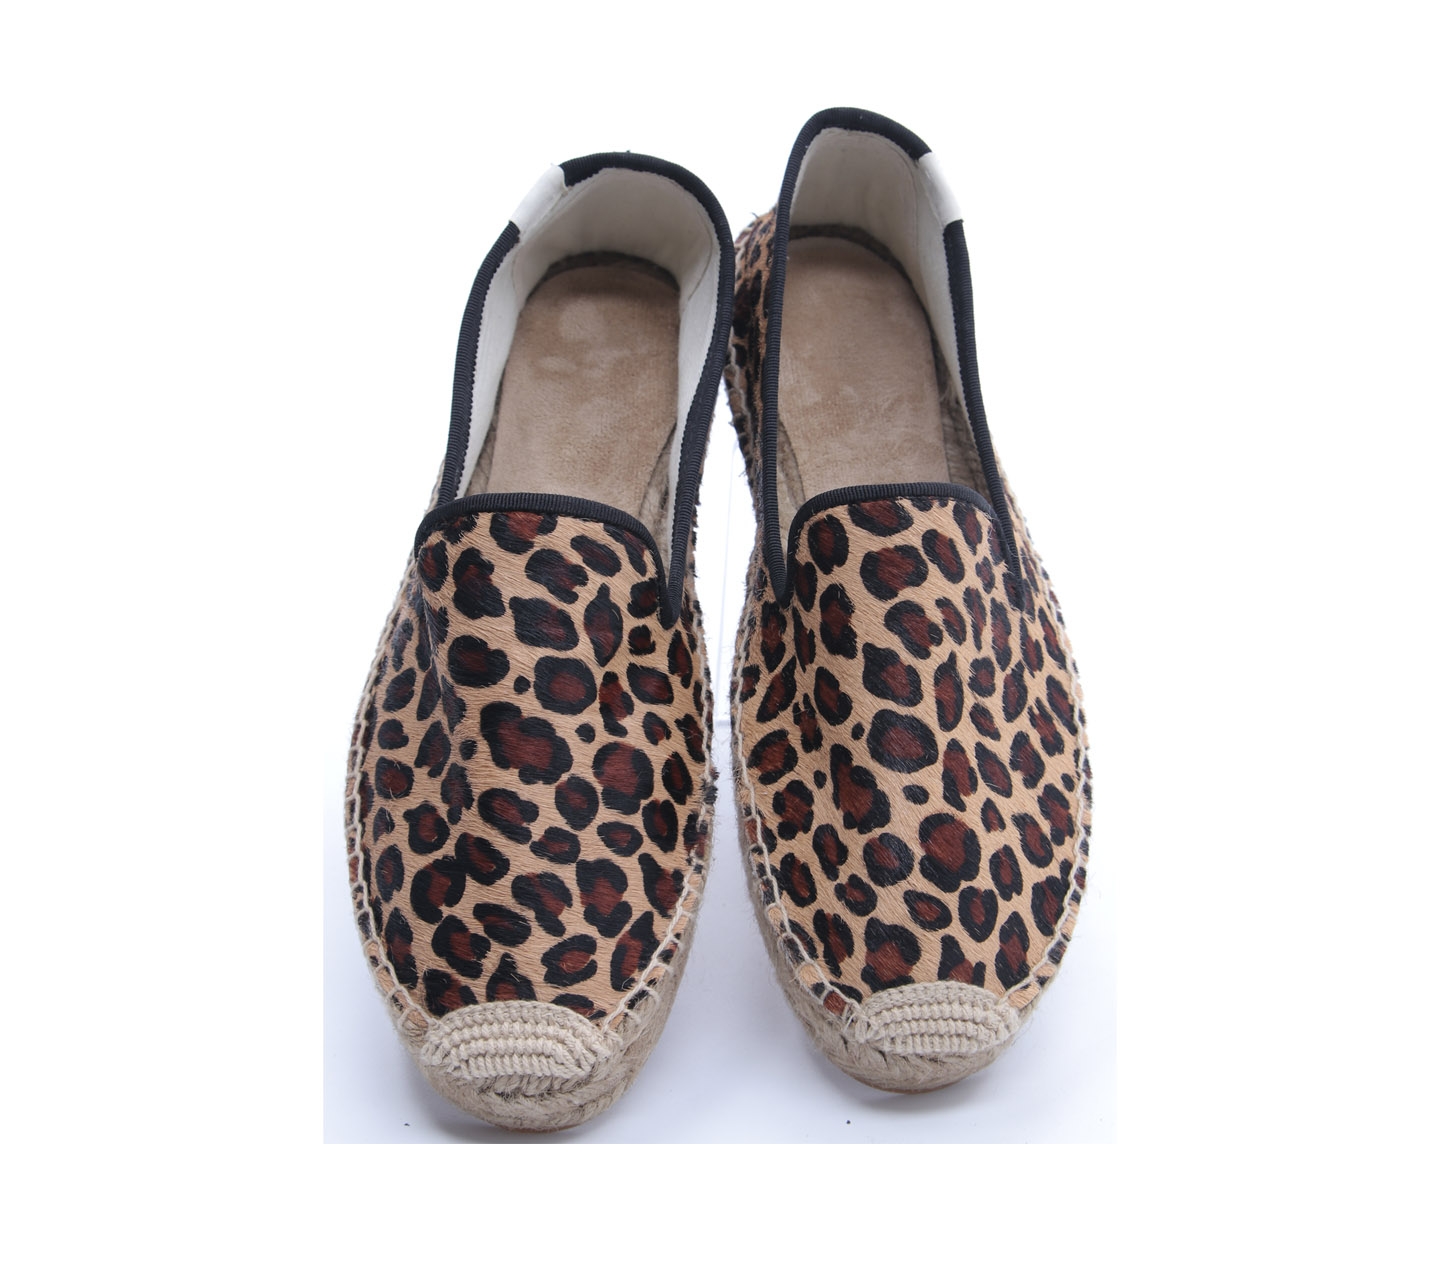 Soludos Brown & Black Leopard Slip OnSneakers